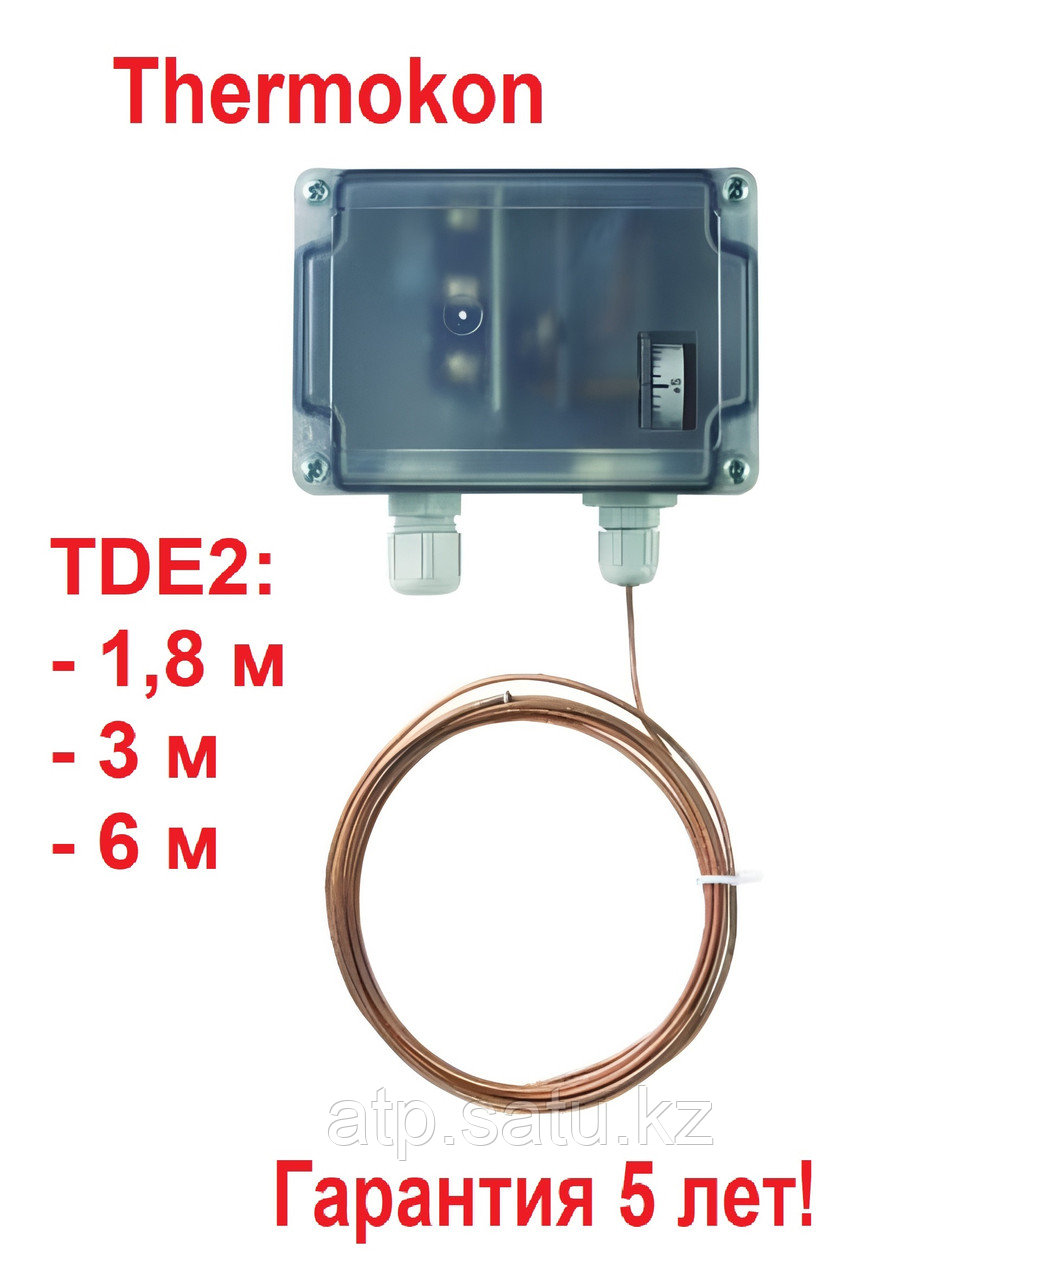 Термостат защиты от замерзания TDE2 длиной 6 метра